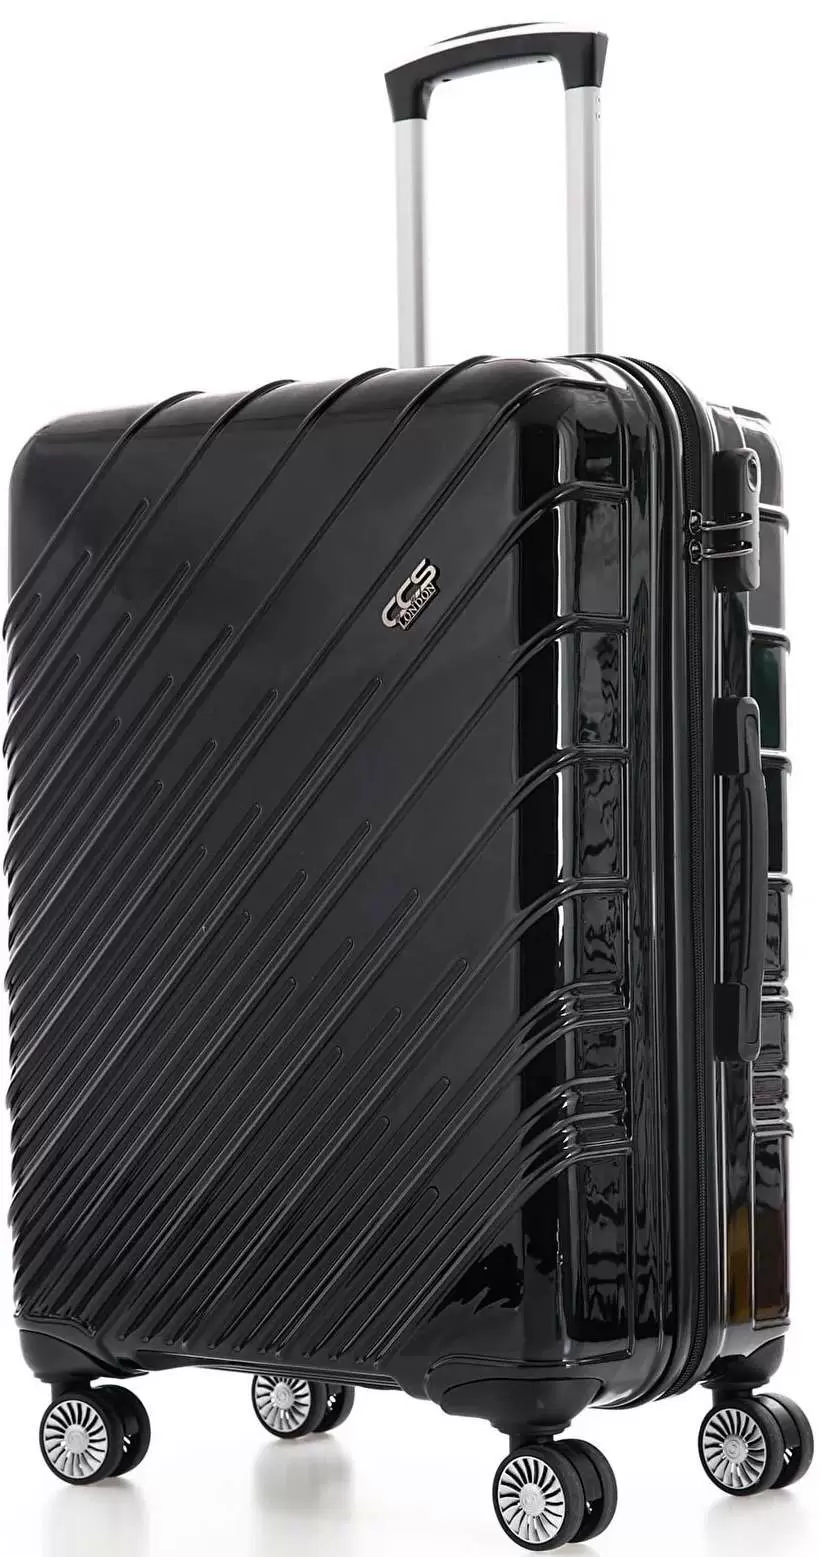 Set de valize CCS 5234 Set, negru